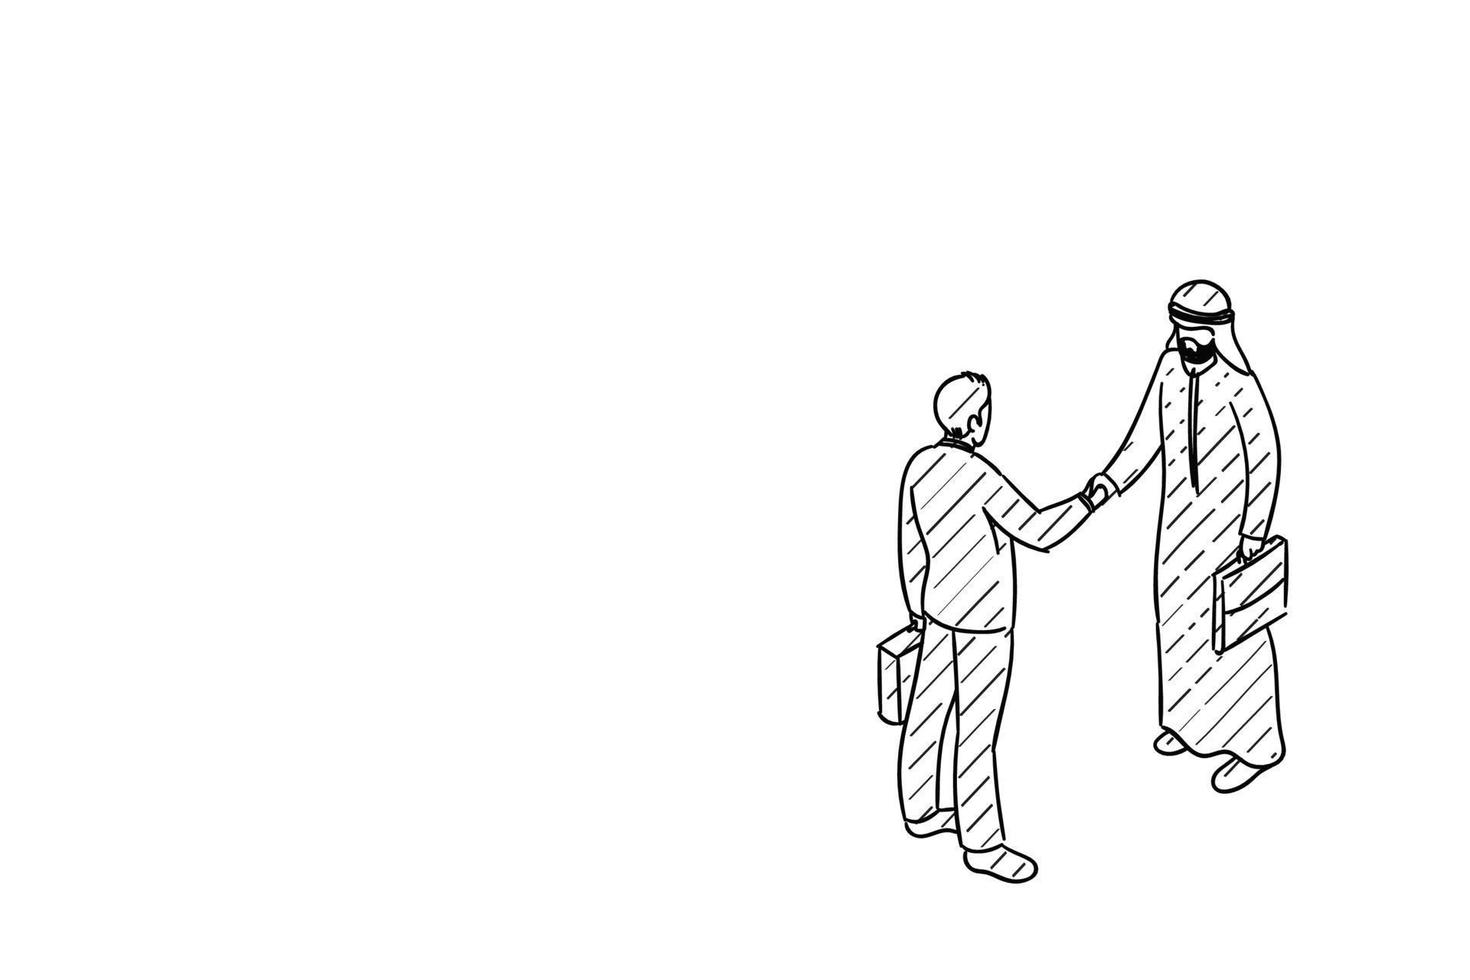 accord d'investisseur arabe avec un homme d'affaires européen. conception d'illustration vectorielle dessinée à la main vecteur